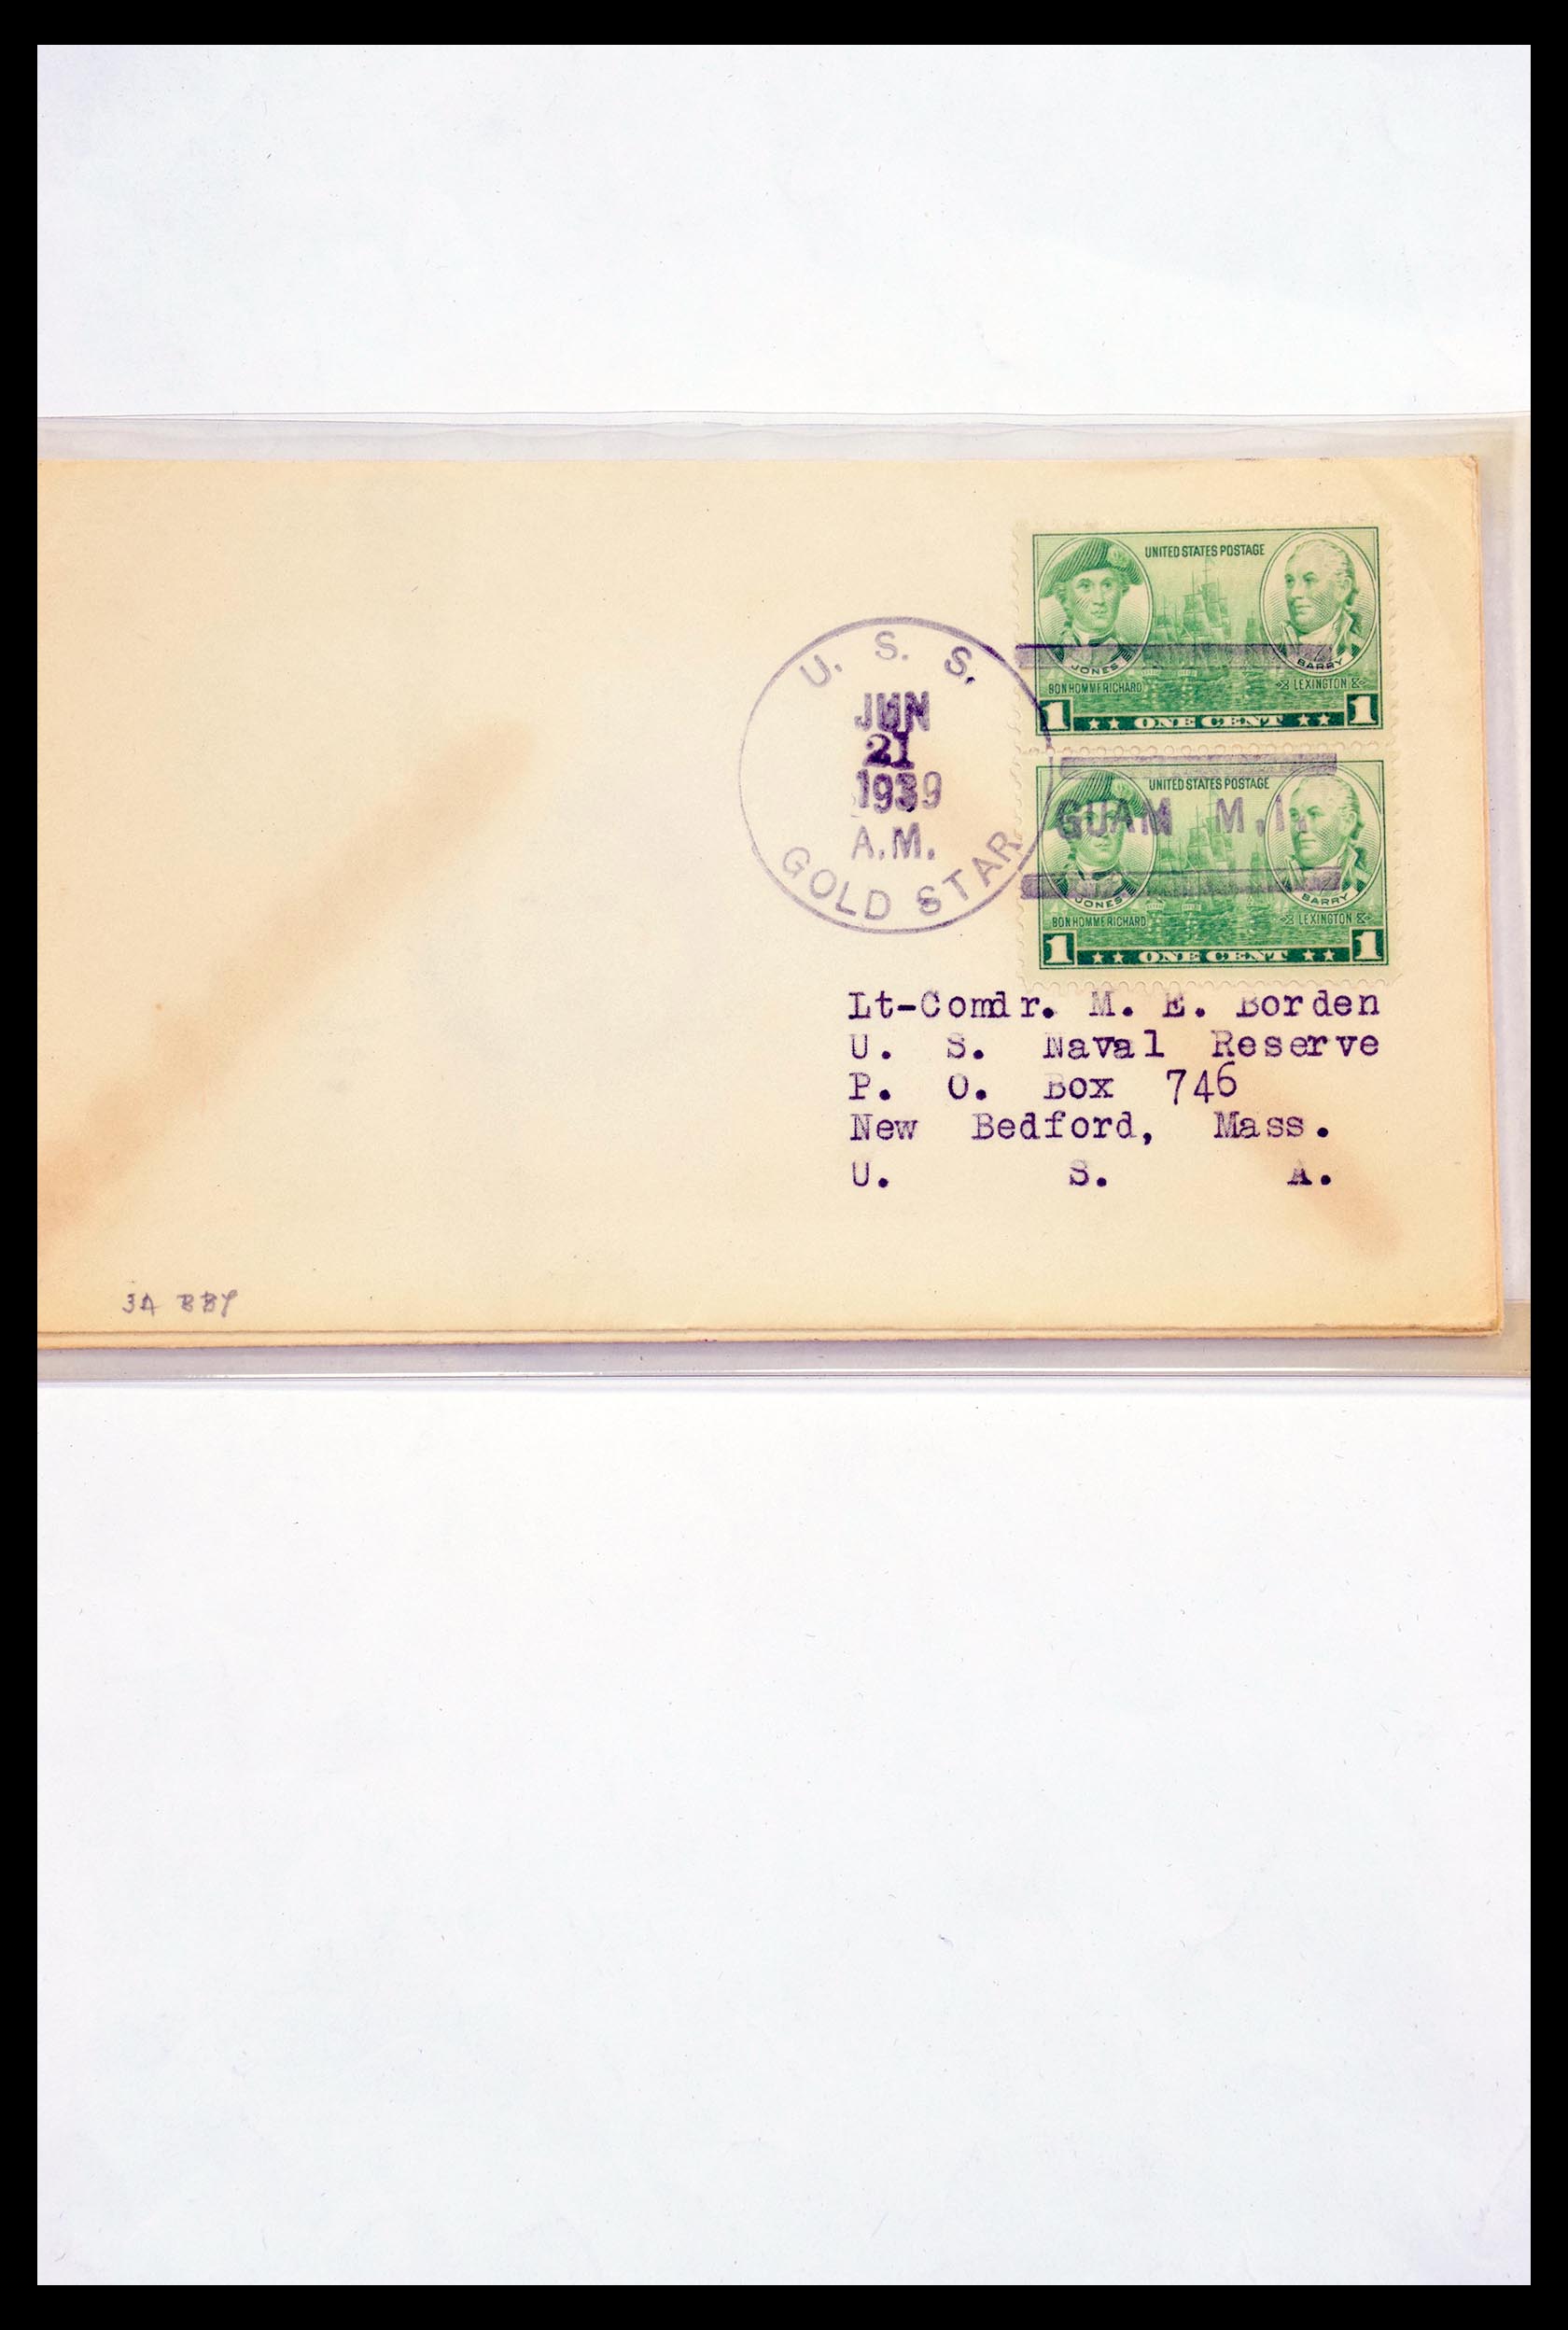 30341 302 - 30341 USA scheepspost brieven 1930-1970.